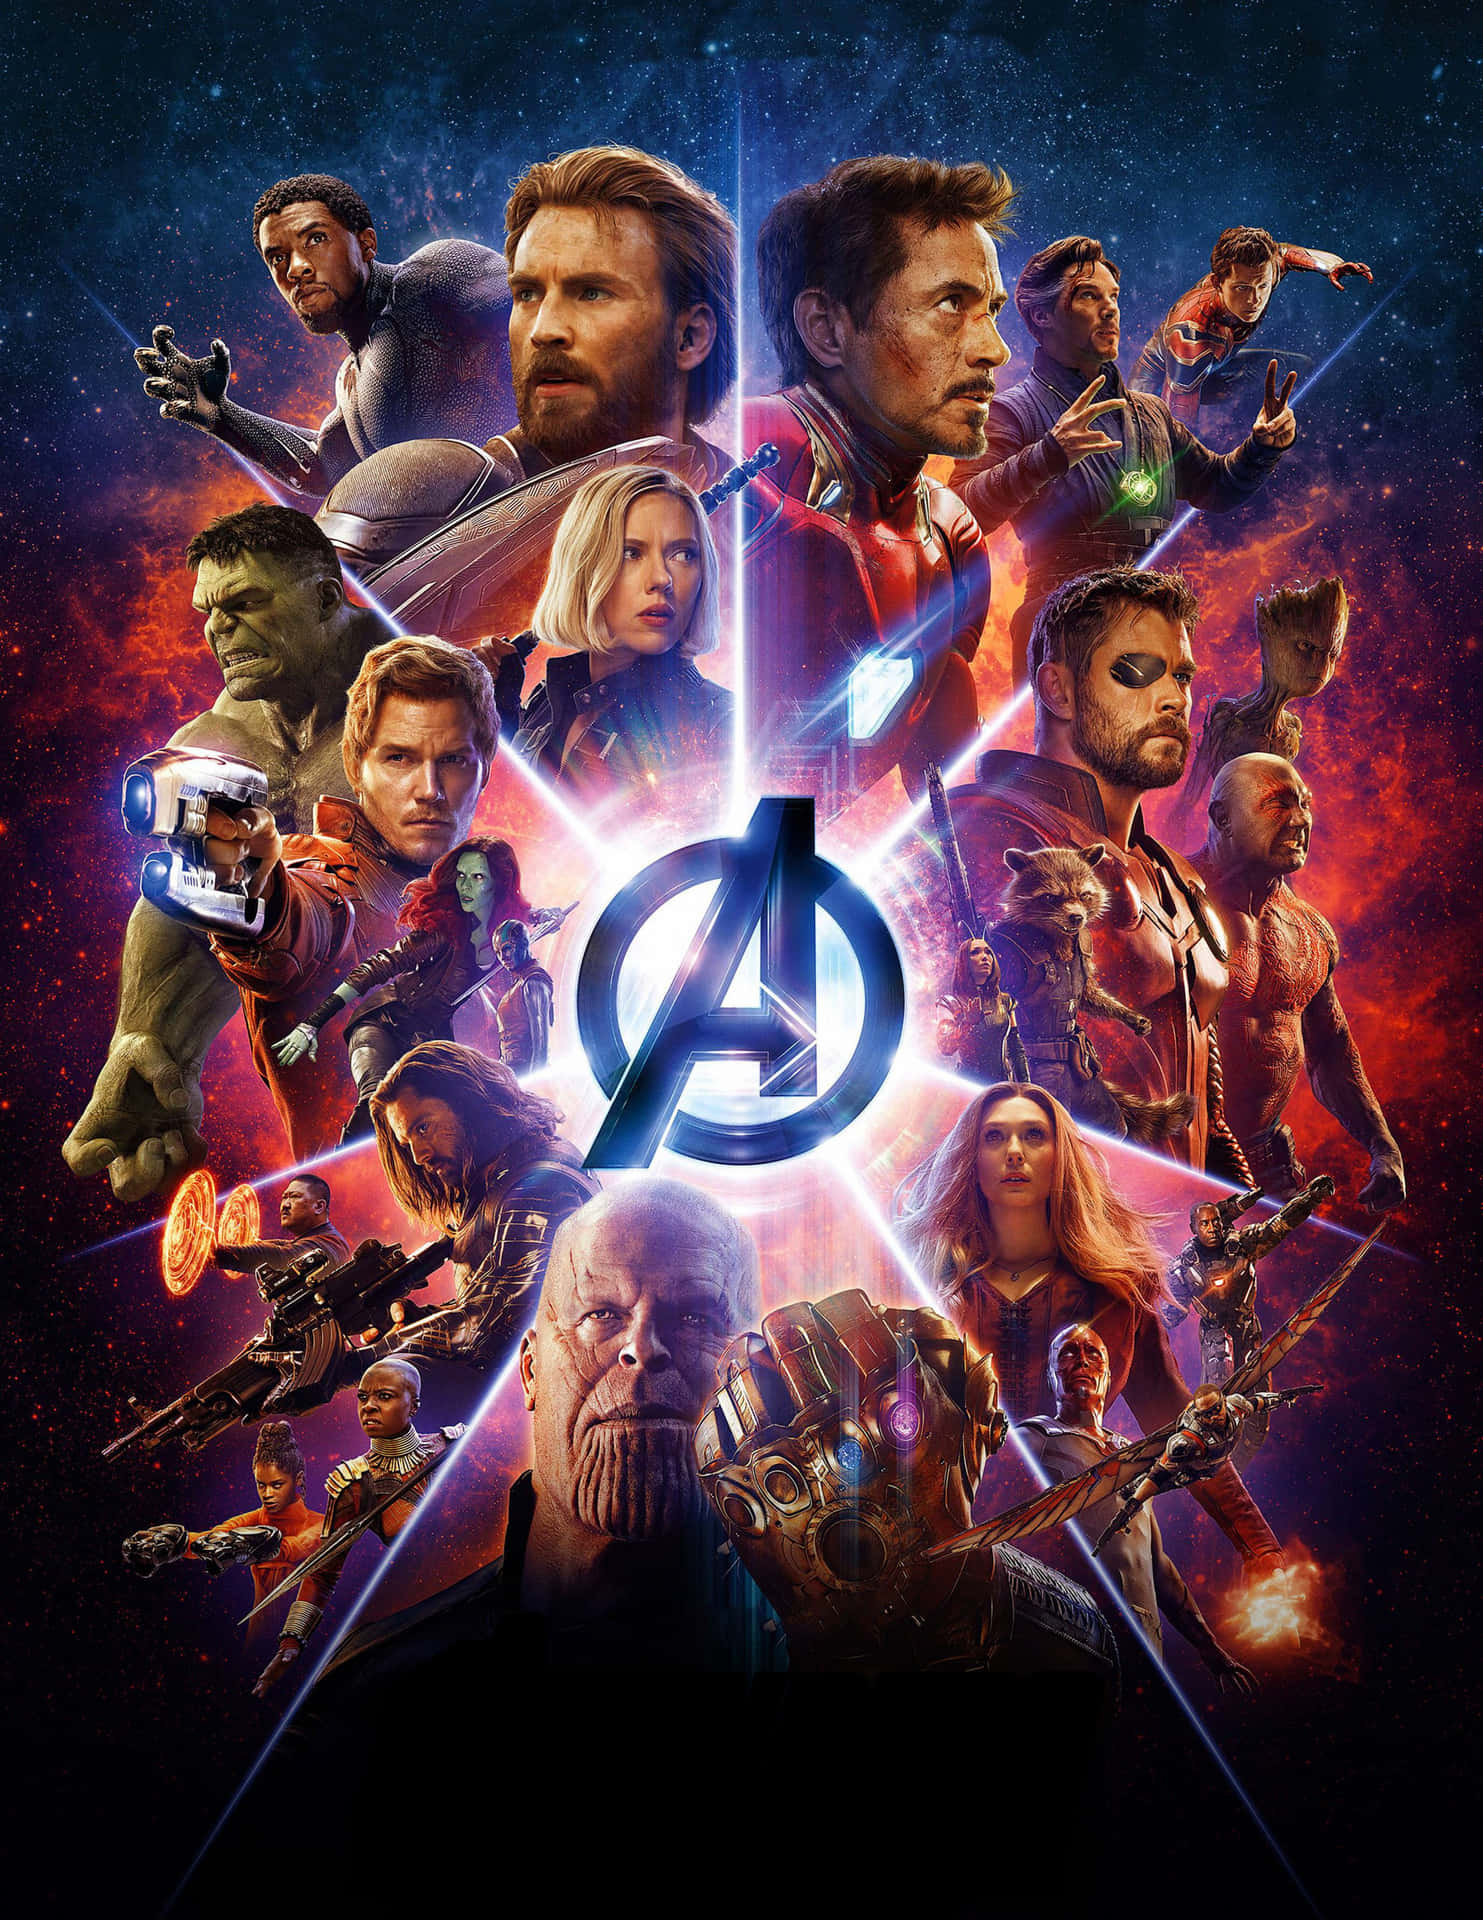 Avengers Unite in Marvel's Infinity War Wallpaper